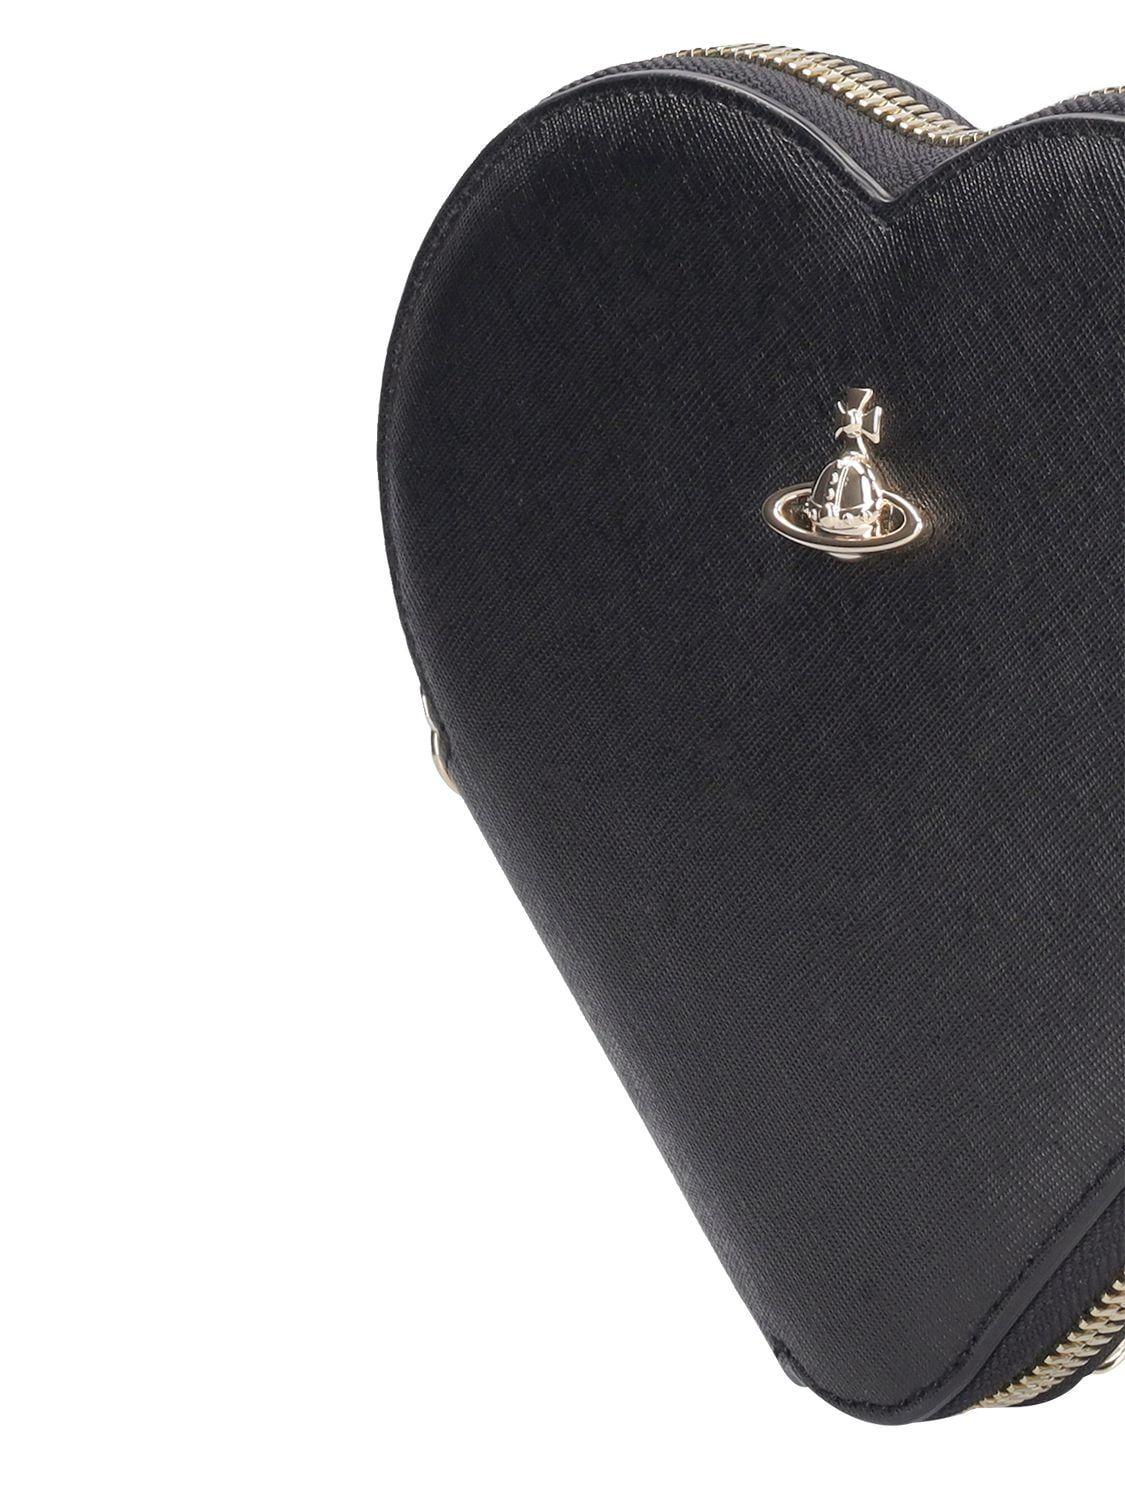 Vivienne Westwood Heart Shape Black Leather Hand Shoulder Bag